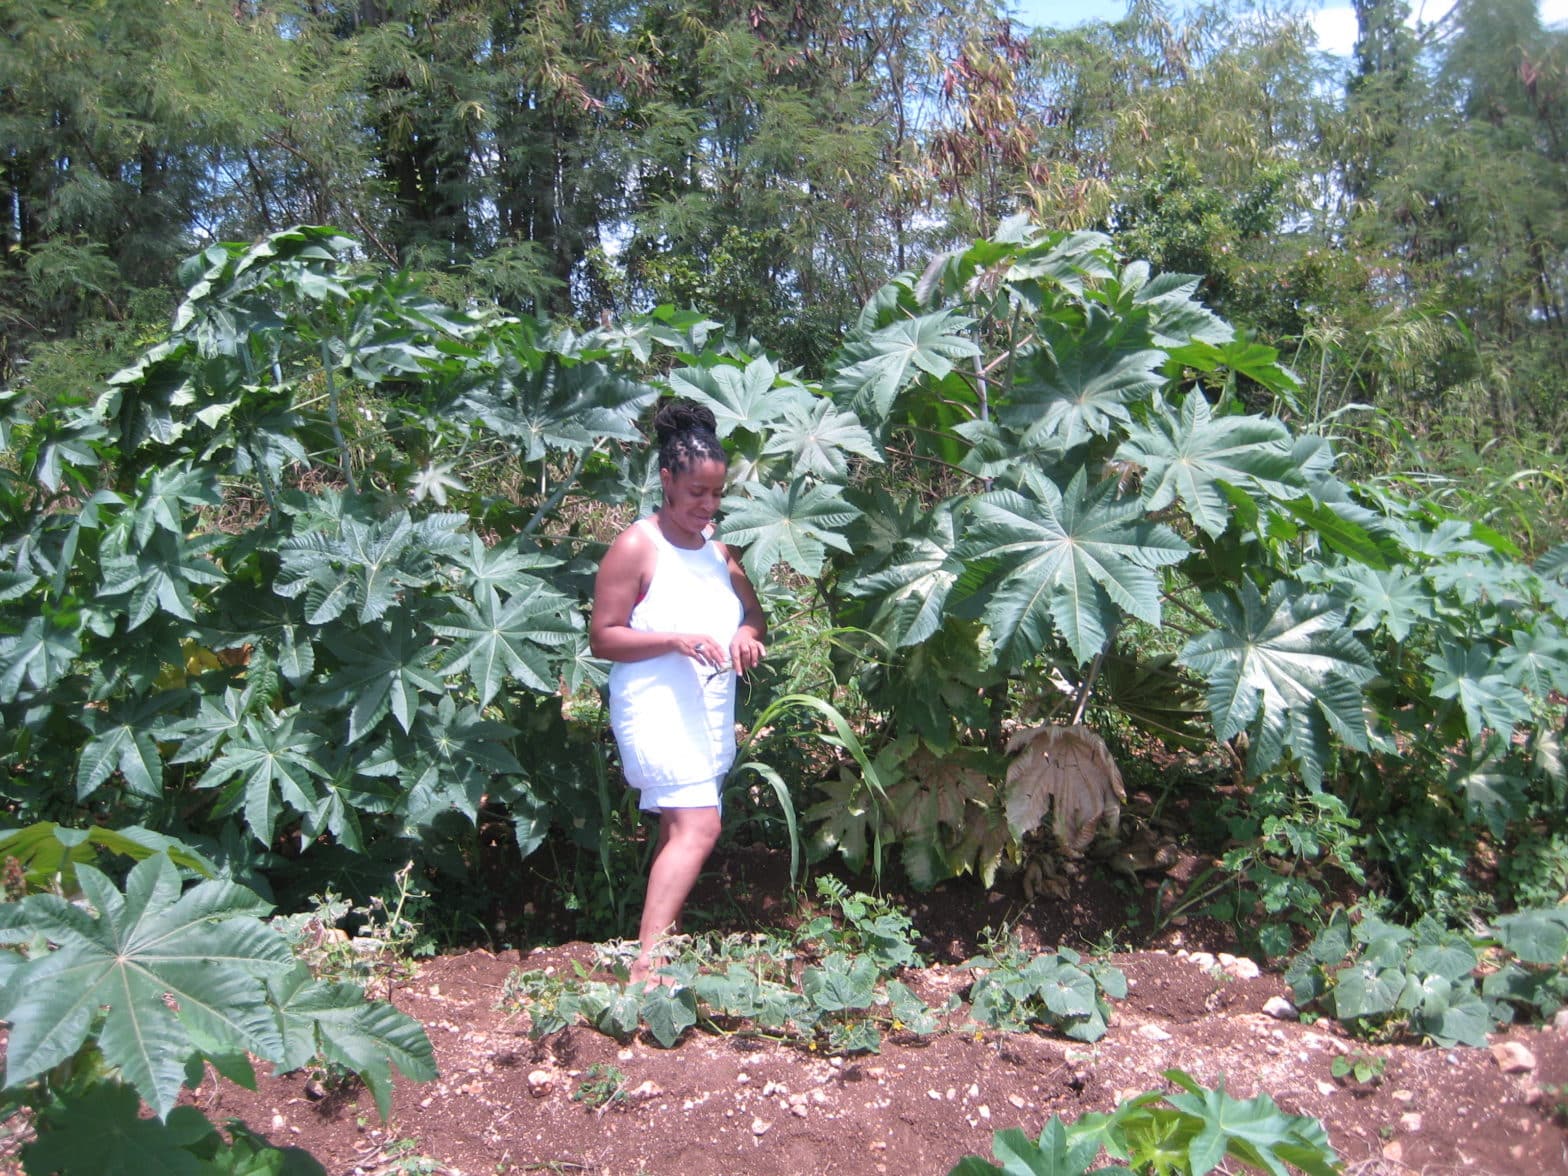 Copyright Noireônaturel. Fétia la créatrice de Noireônaturel dans un champ de Carapatier en Guadeloupe (Grande Terre)